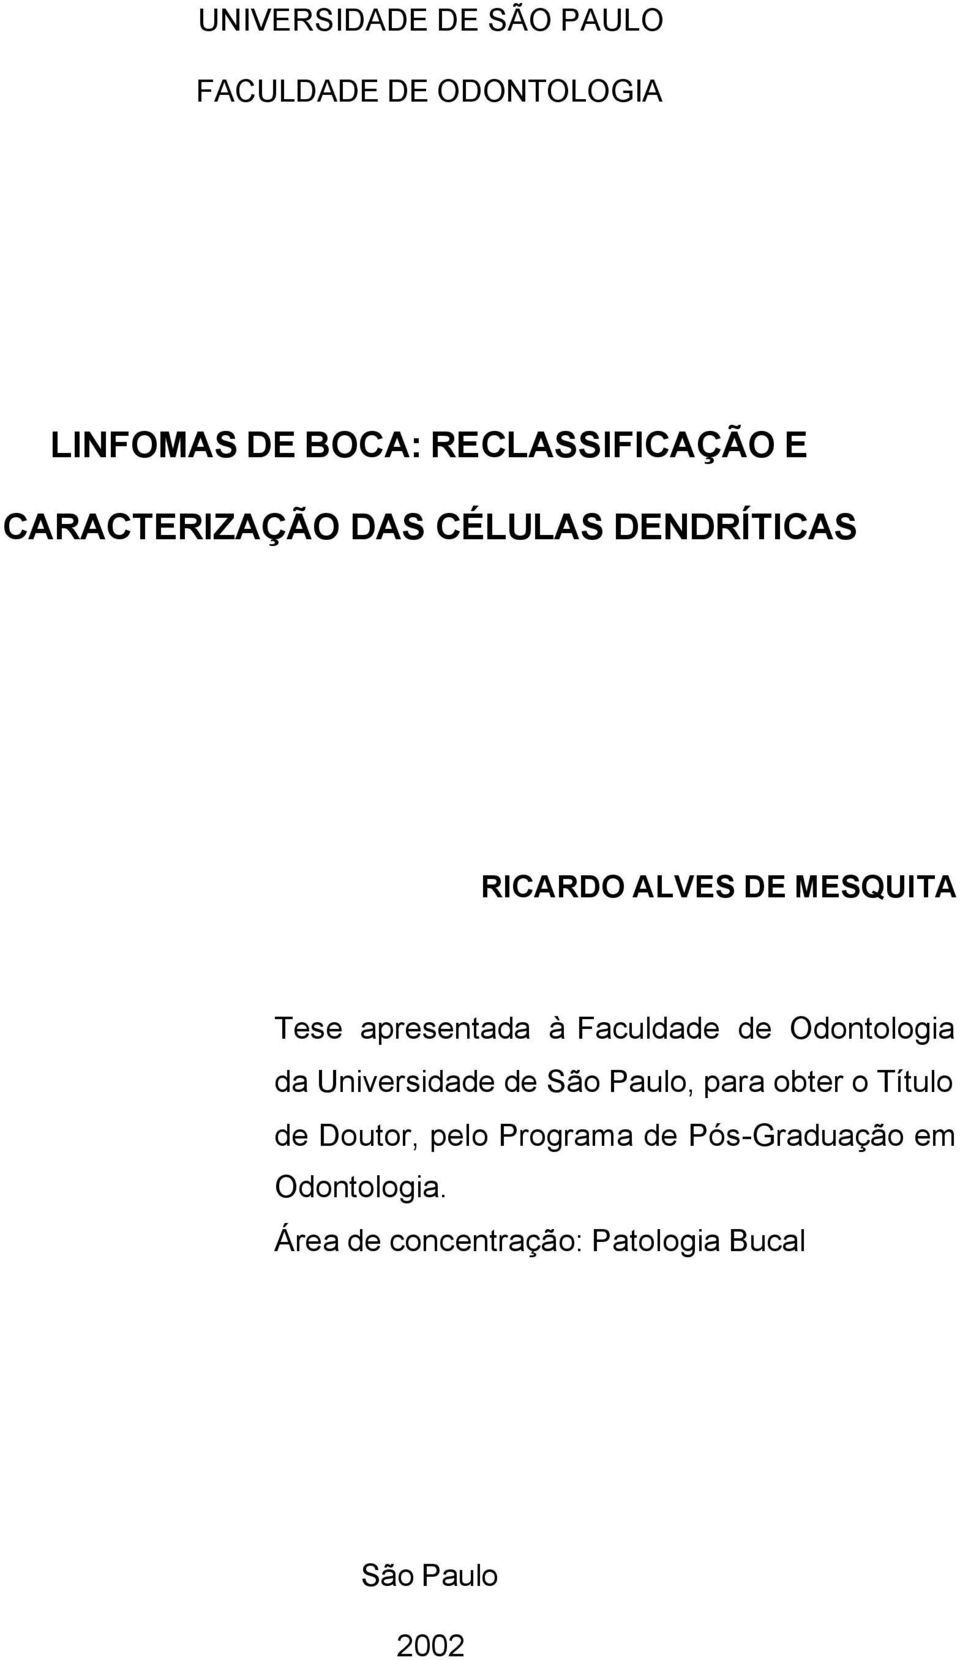 Faculdade de Odontologia da Universidade de São Paulo, para obter o Título de Doutor,